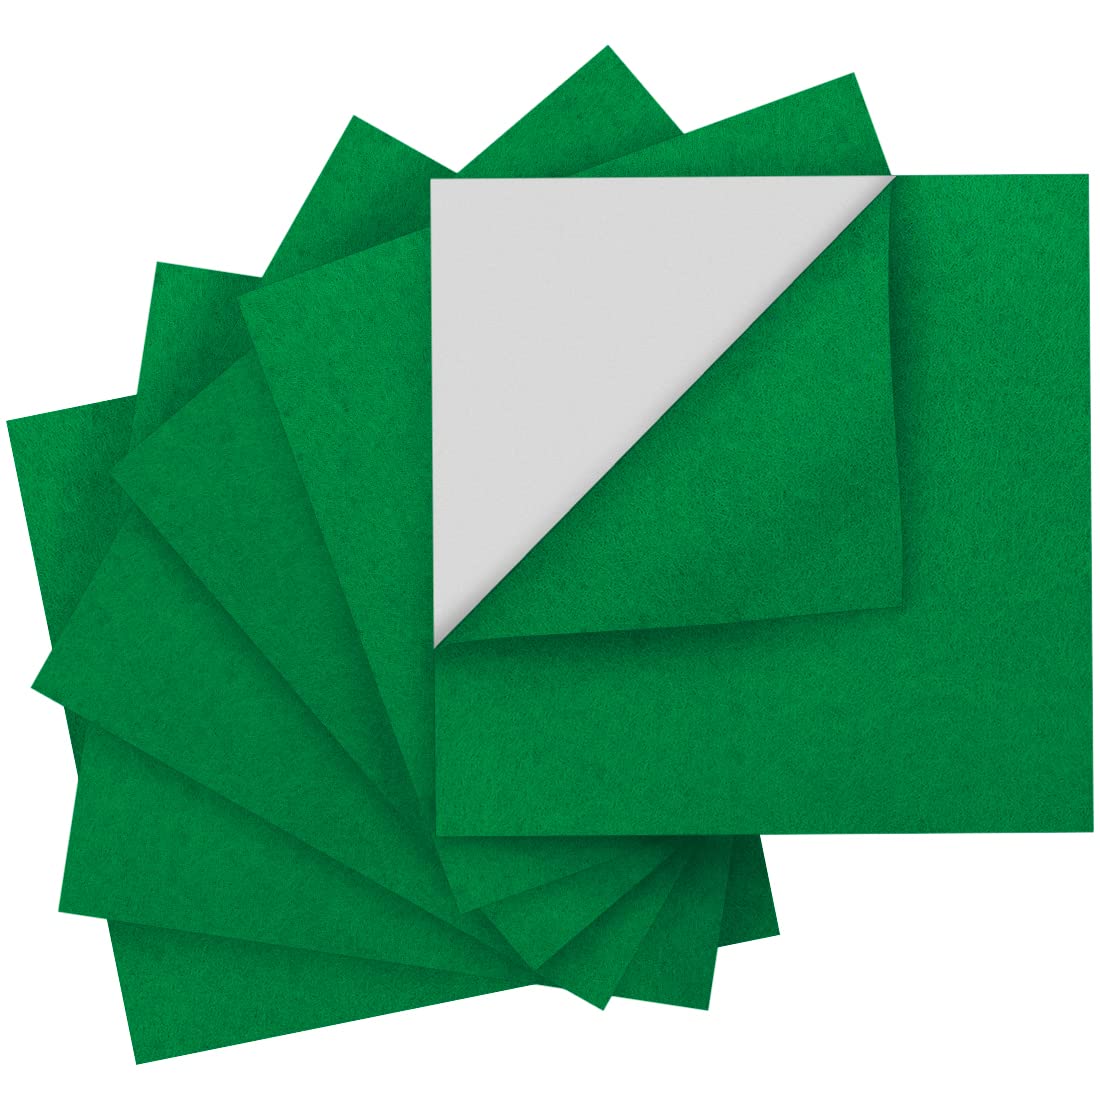 Iooleem Green Felt Sheets, Self-Adhesive Felt Sheets, 90Pcs 4X4 (10Cmx10Cm),Pre-Cut Felt Sheets For Crafts, Craft Felt Fabric Sh